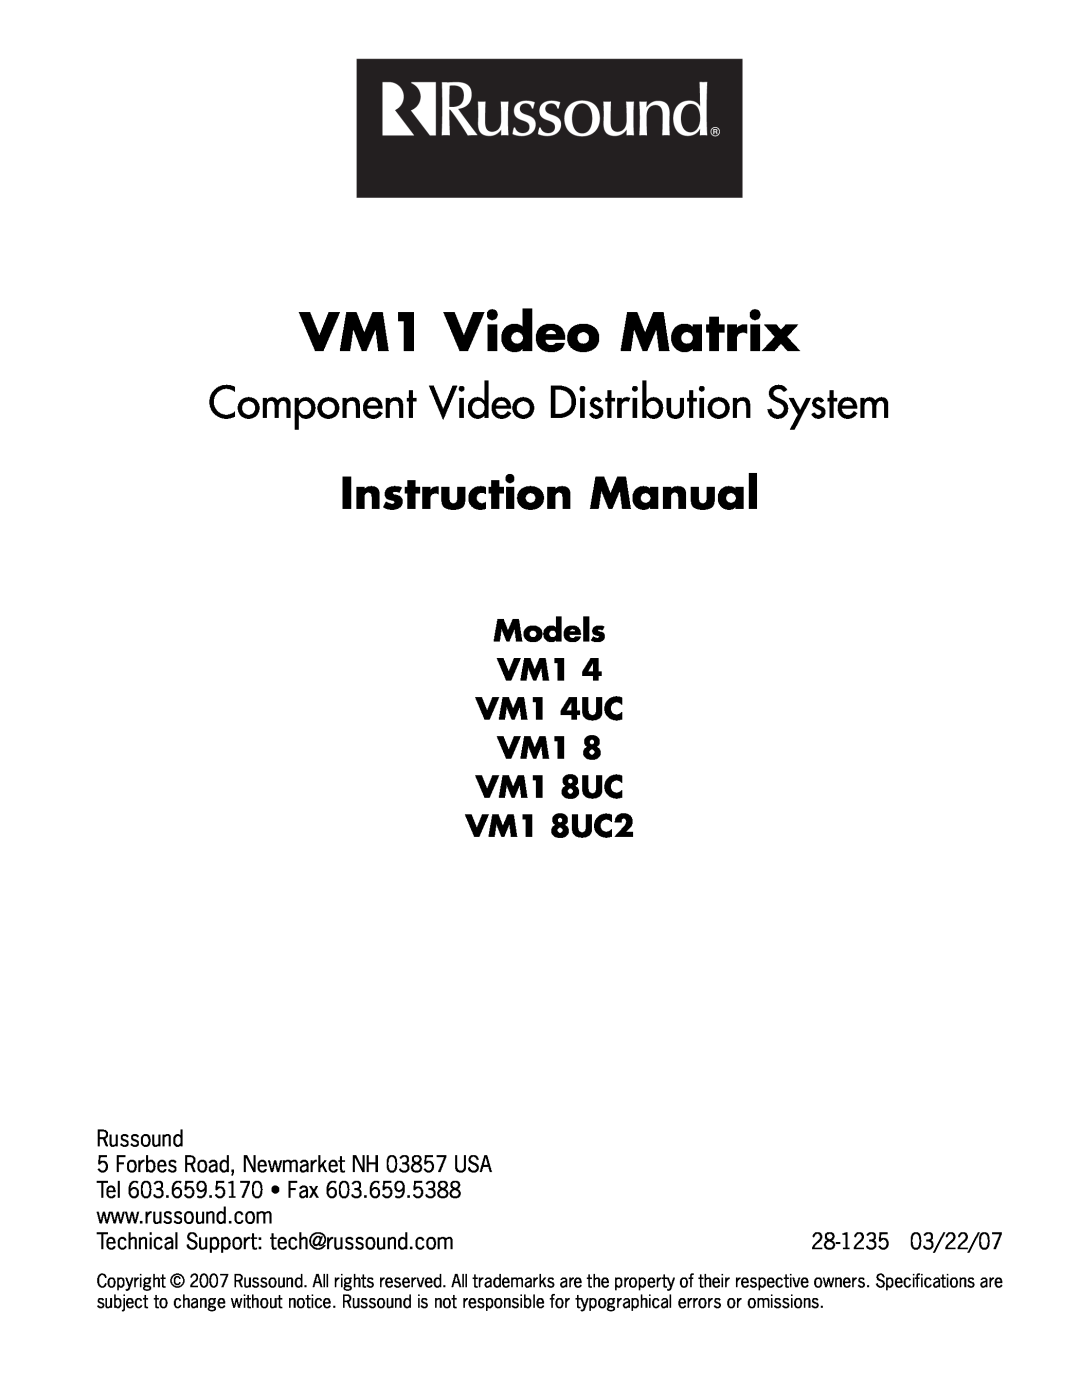 Russound manual VM1 Video Matrix, Models VM1 VM1 4UC VM1 VM1 8UC VM1 8UC2, Russound, Forbes Road, Newmarket NH 03857 USA 